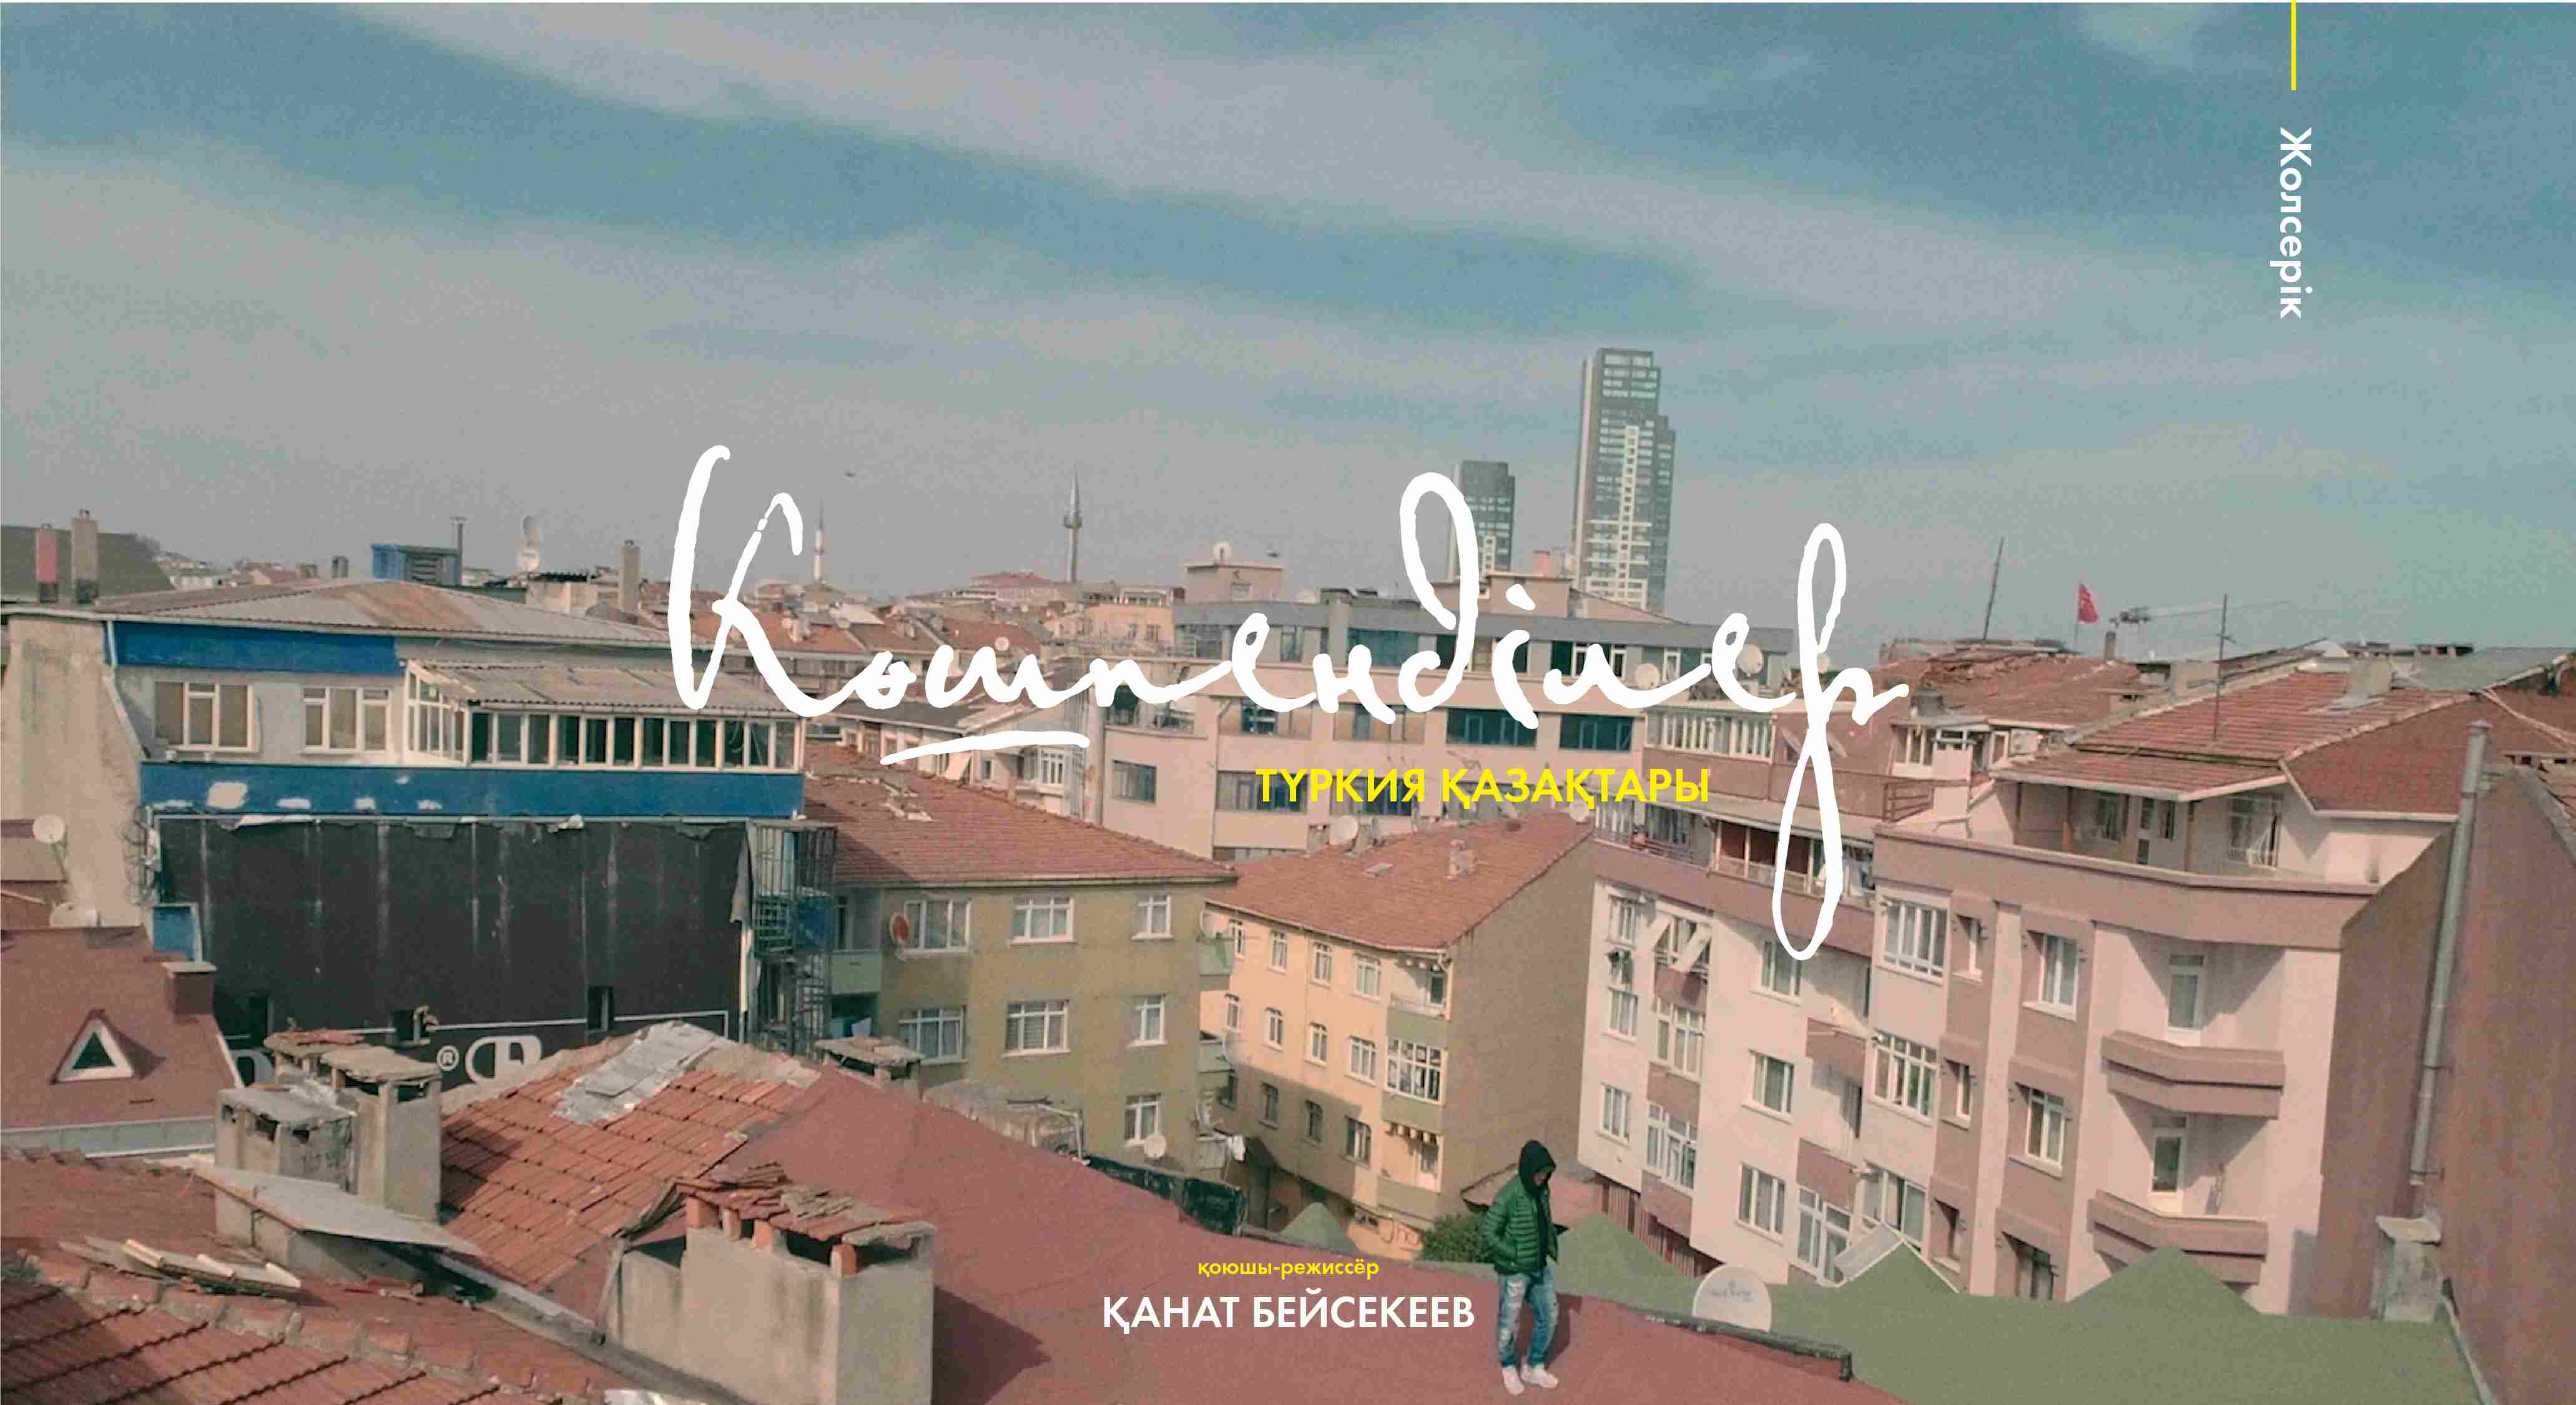  Из Нью-Йорка в Стамбул: Кана Бейсекеев снял документальный фильм о турецких казахах